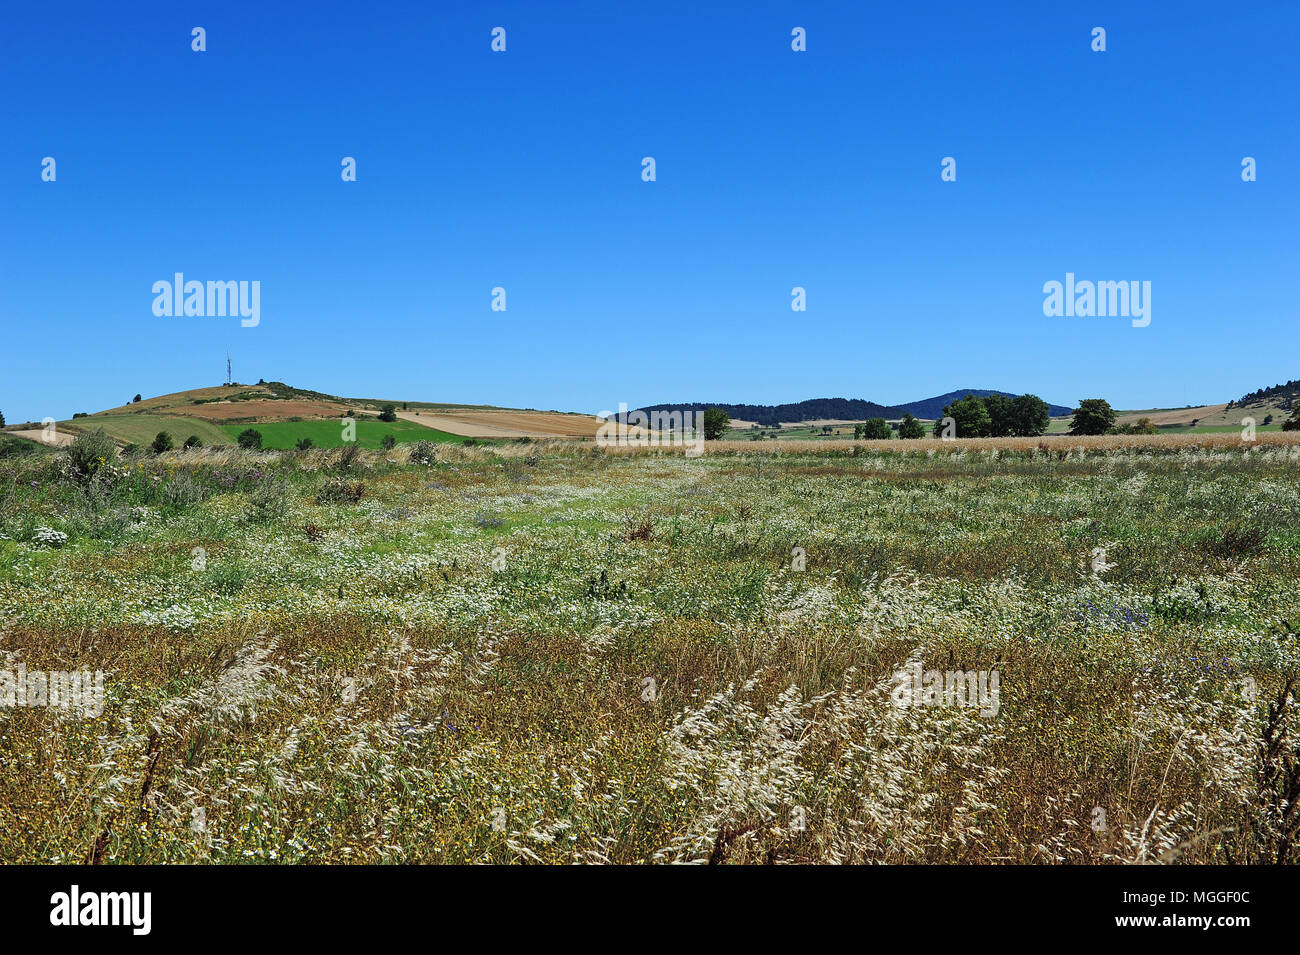 Un champ de lentilles vertes du Puy, près du village de Landos, dans la région de Le Puy, Haute-Loire, France Banque D'Images